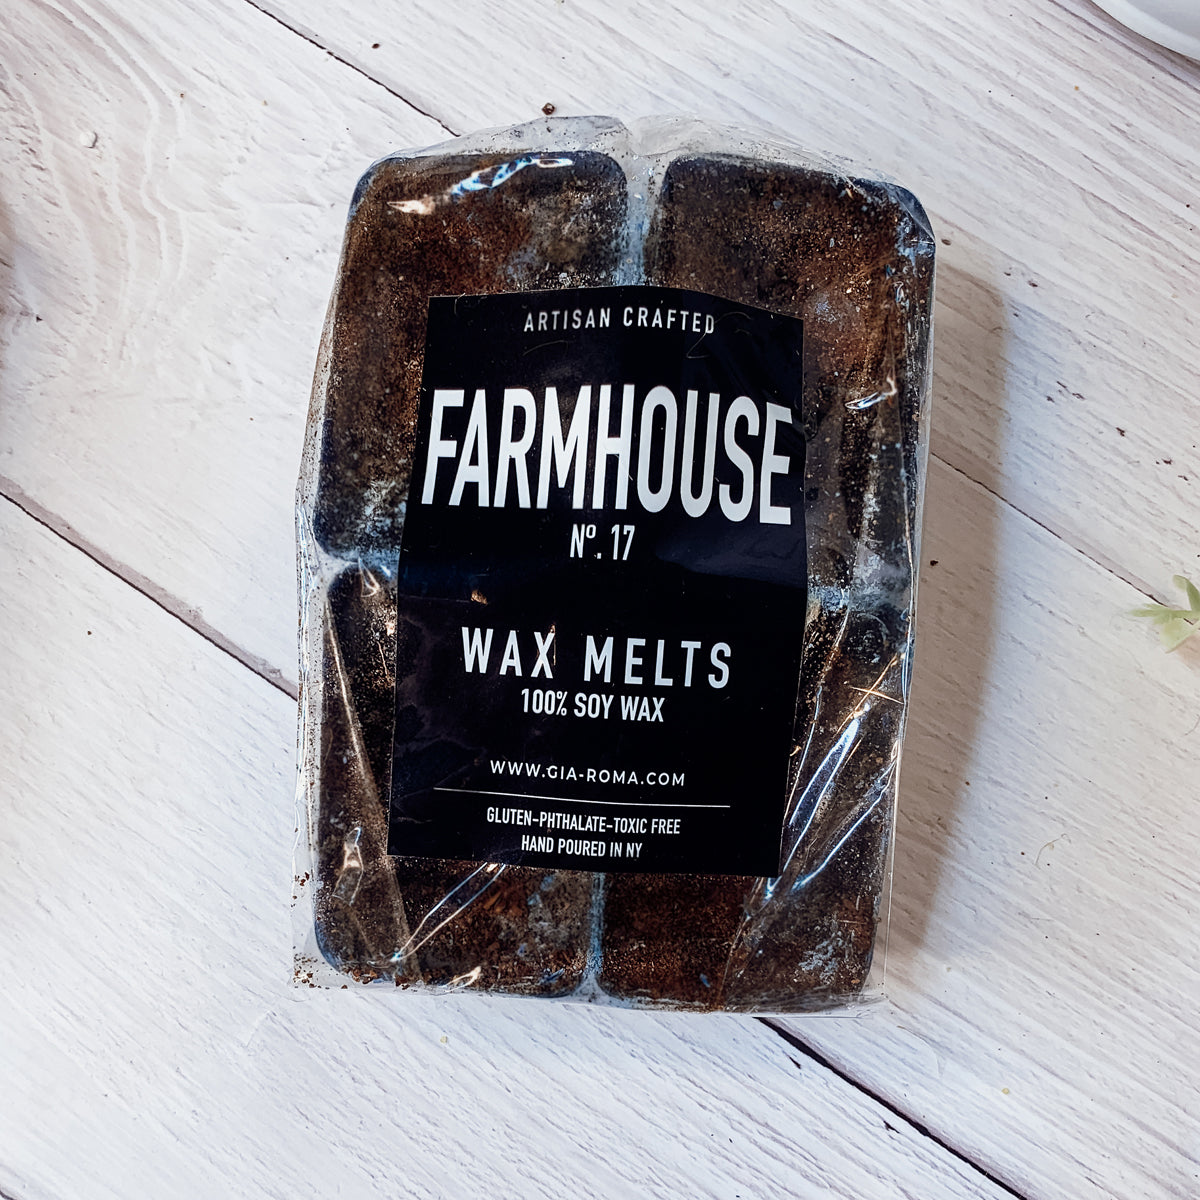 Farmhouse wax melt, black label, xl